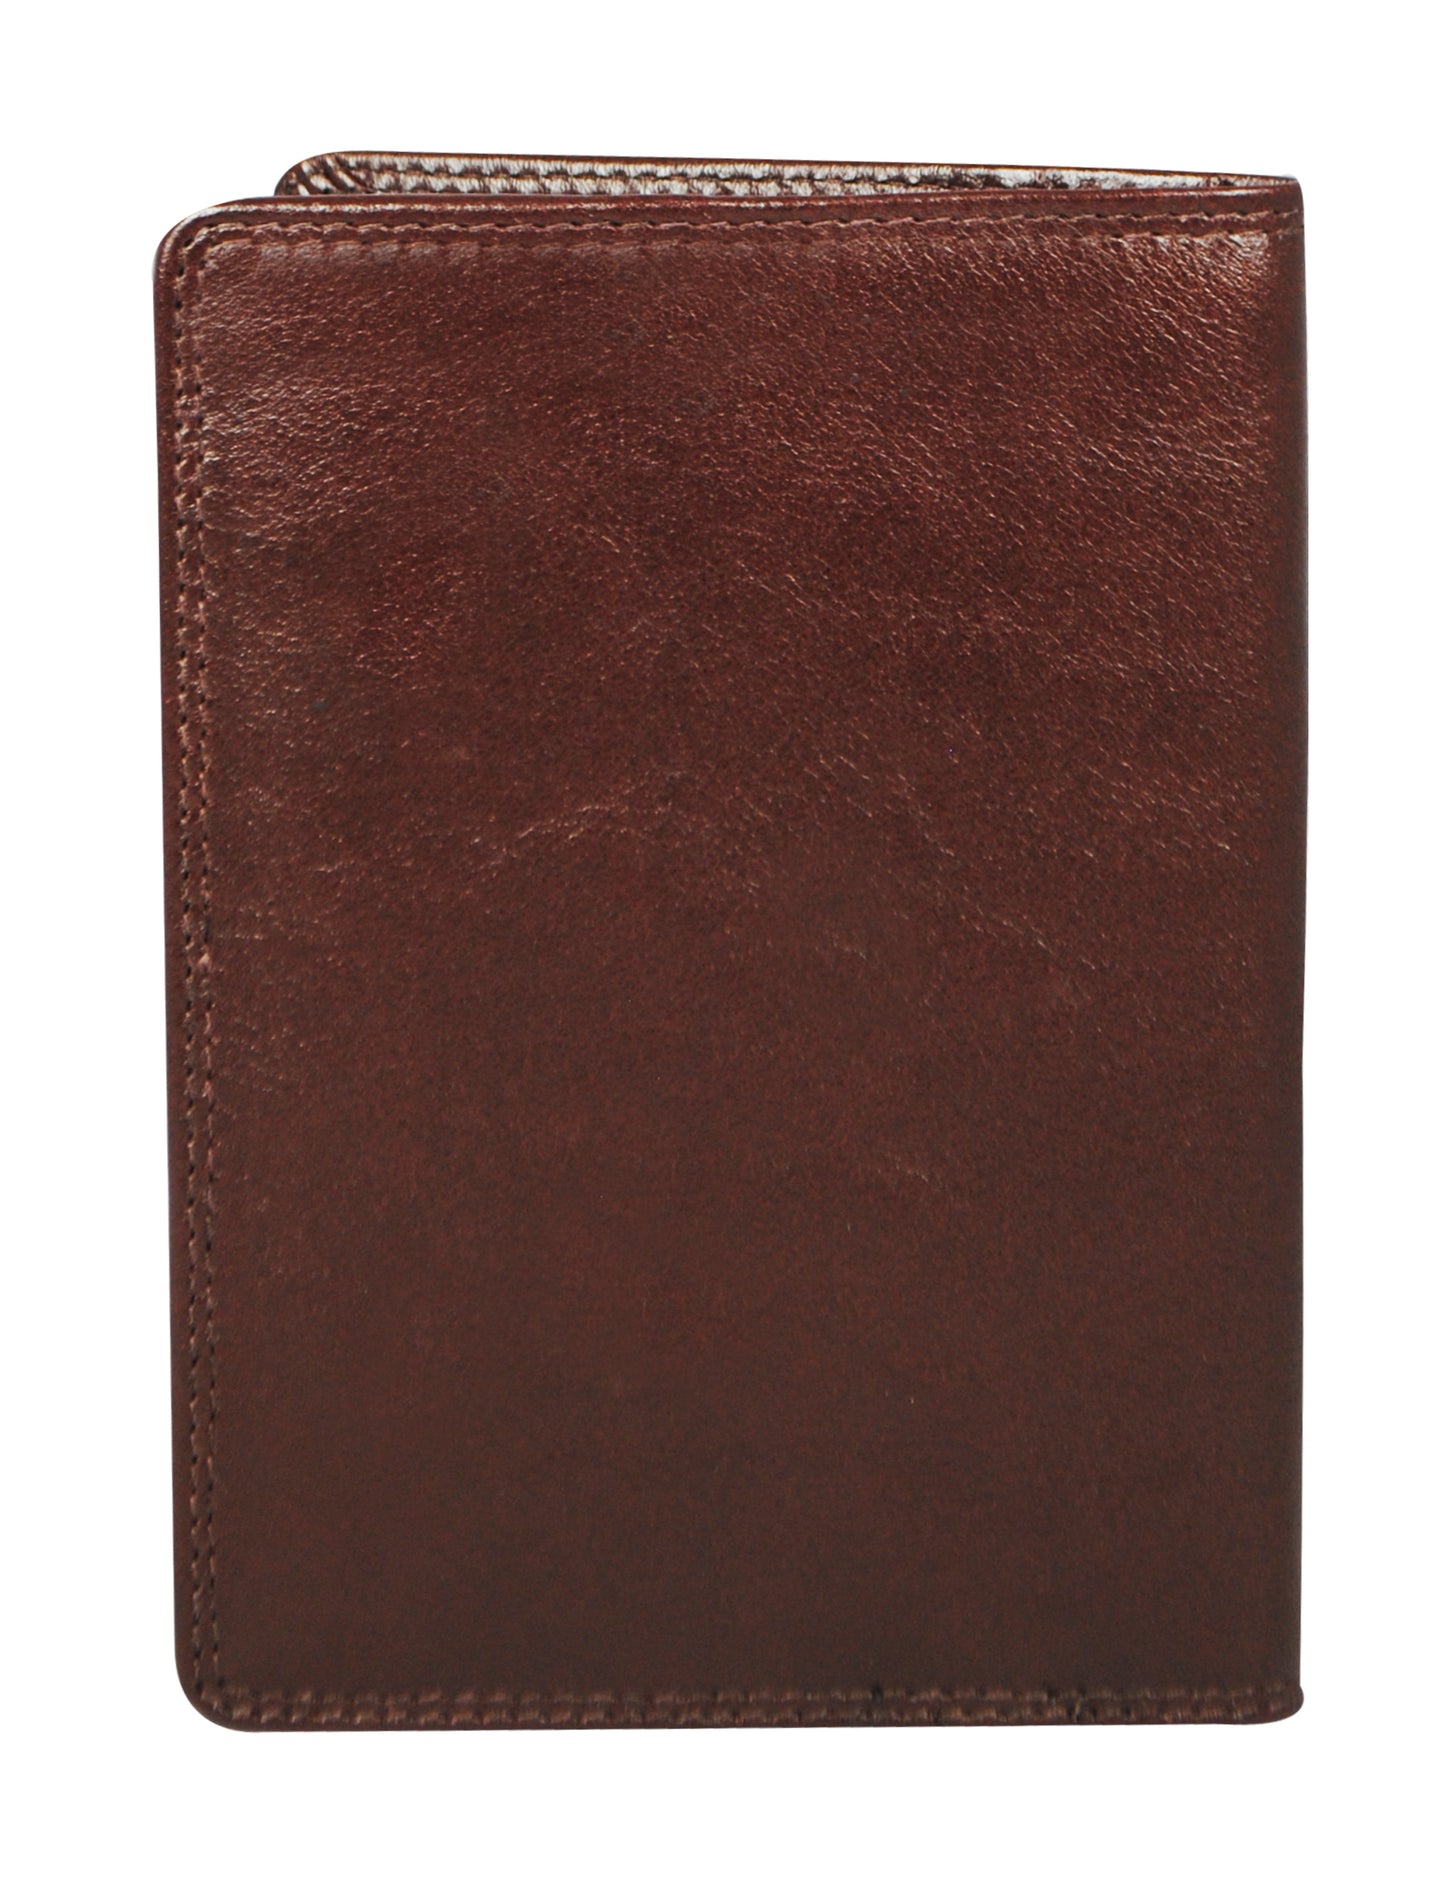 Calfnero Genuine Leather Passport Wallet-Passport Holder (5232-Brown)